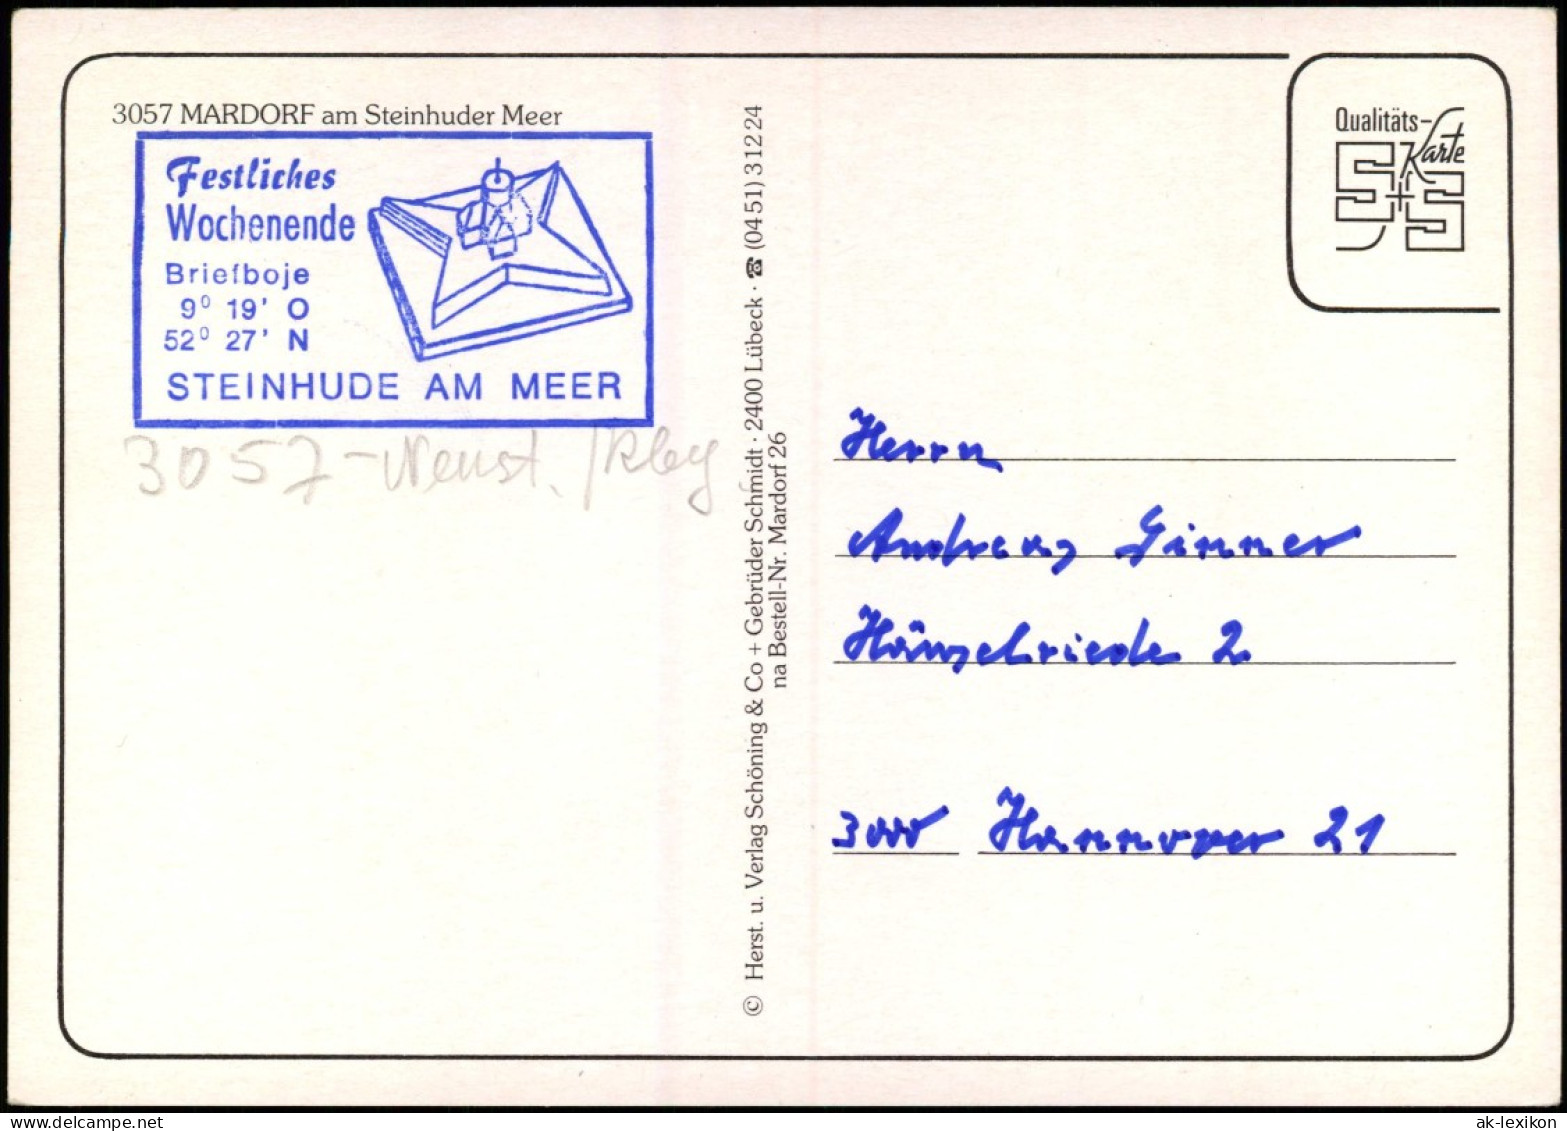 Mardorf Steinhuder Meer Neustadt Am Rübenberge Mehrbildkarte Ortsansichten 1993 - Neustadt Am Rübenberge